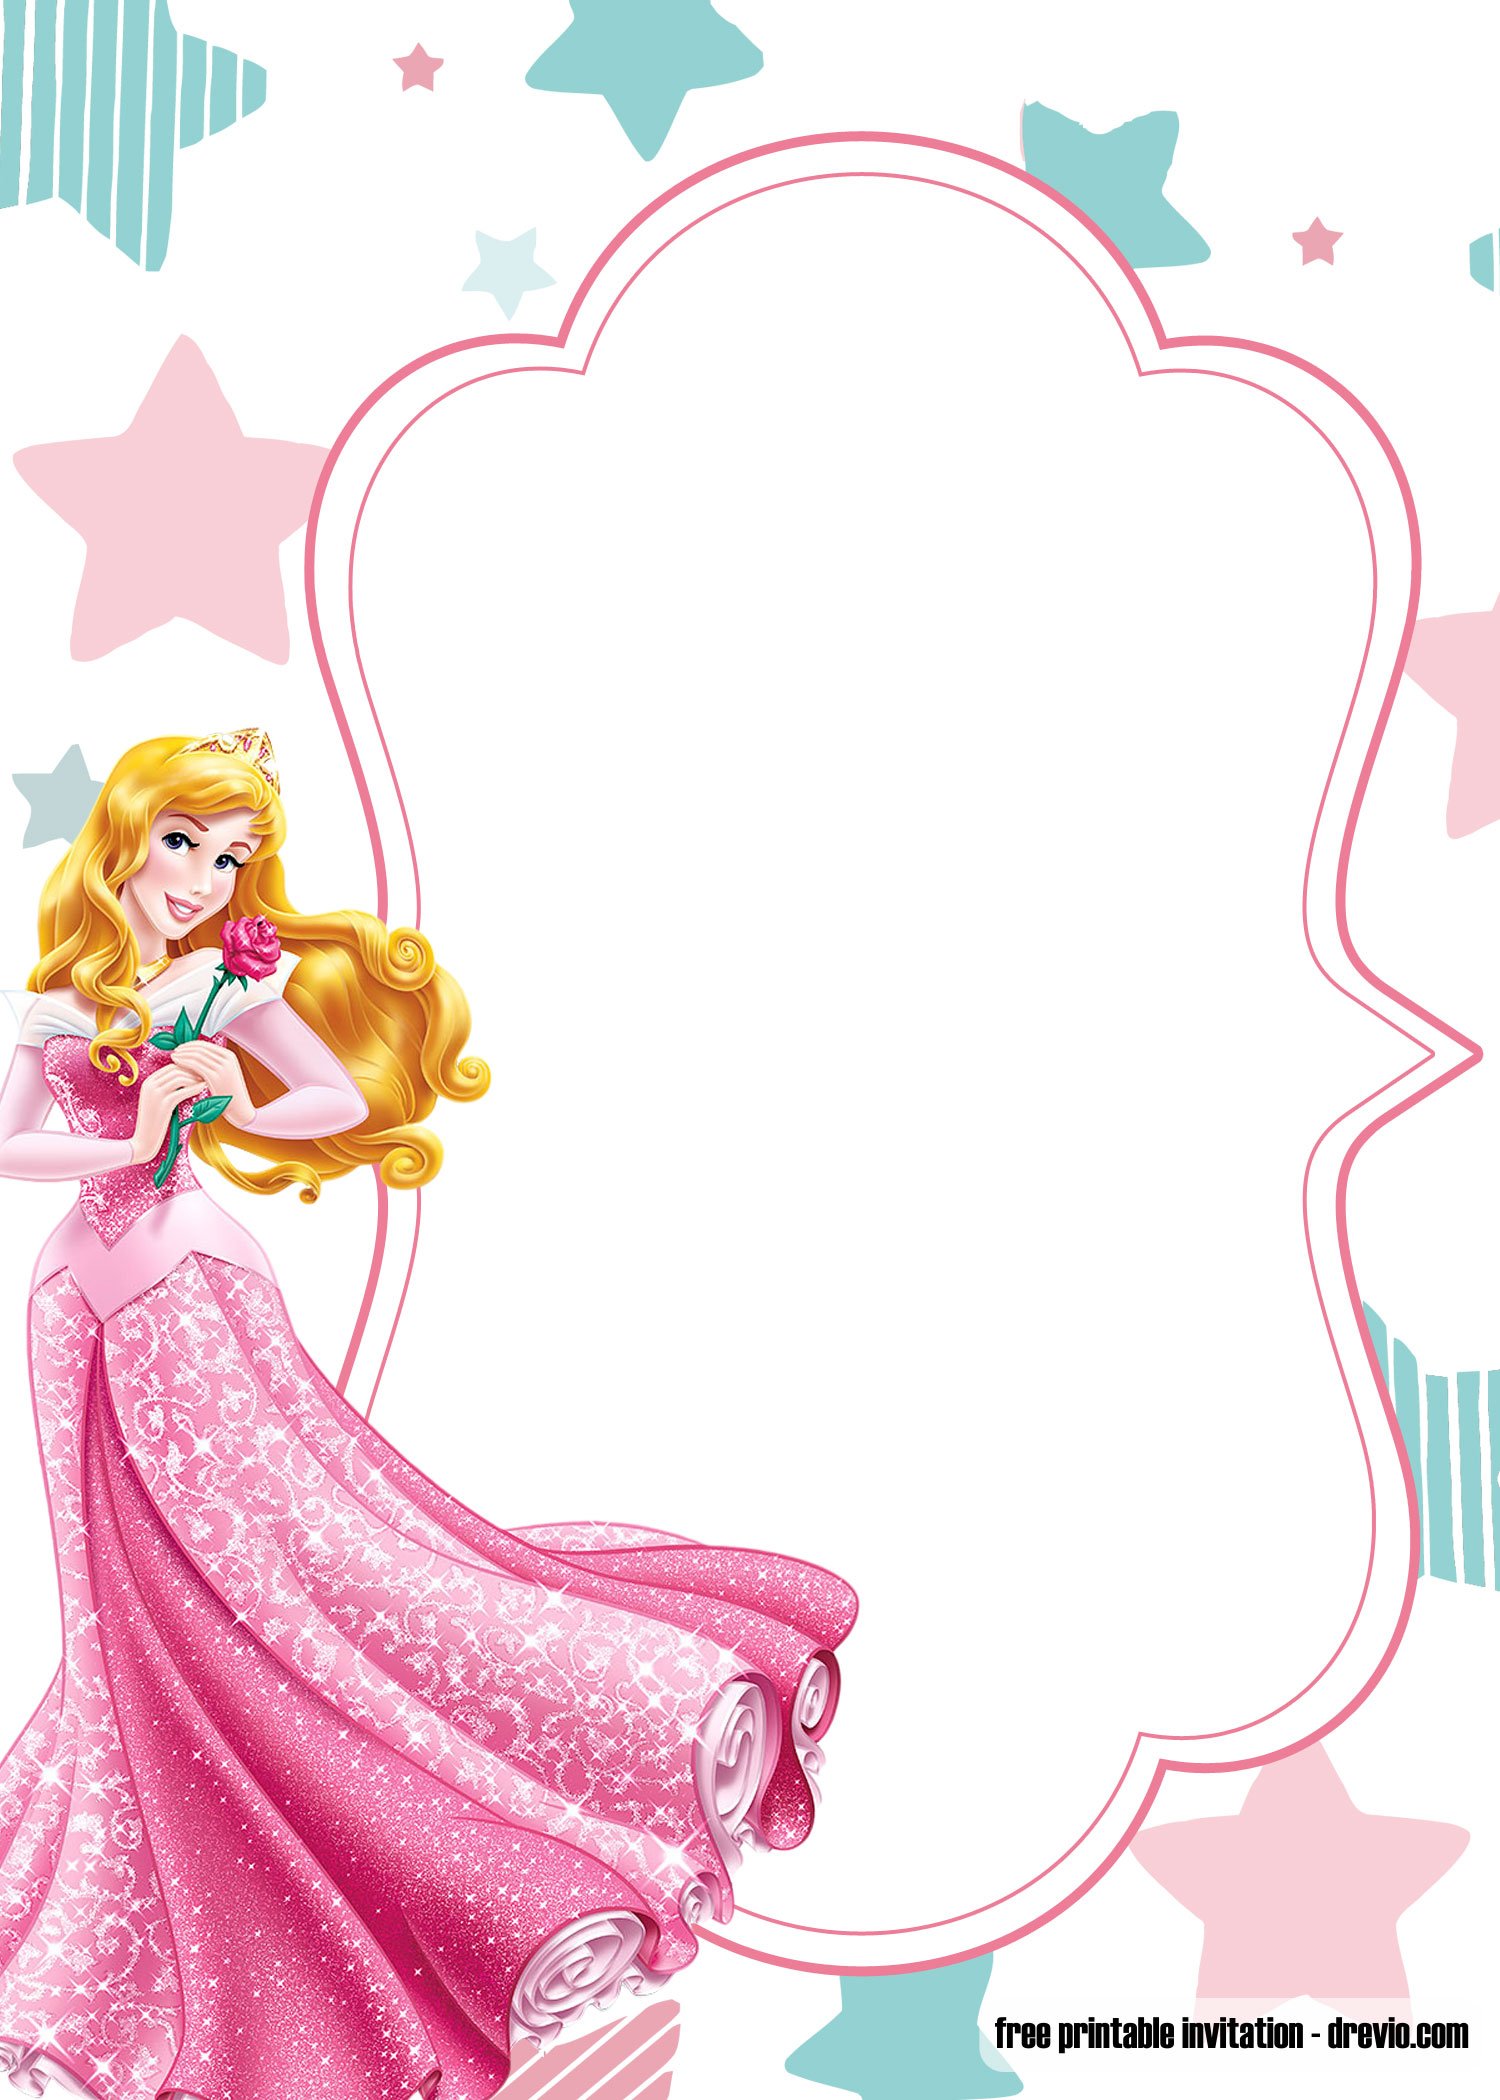 free-printable-princess-birthday-invitation-templates-barbie-and-disney-princesses-drevio